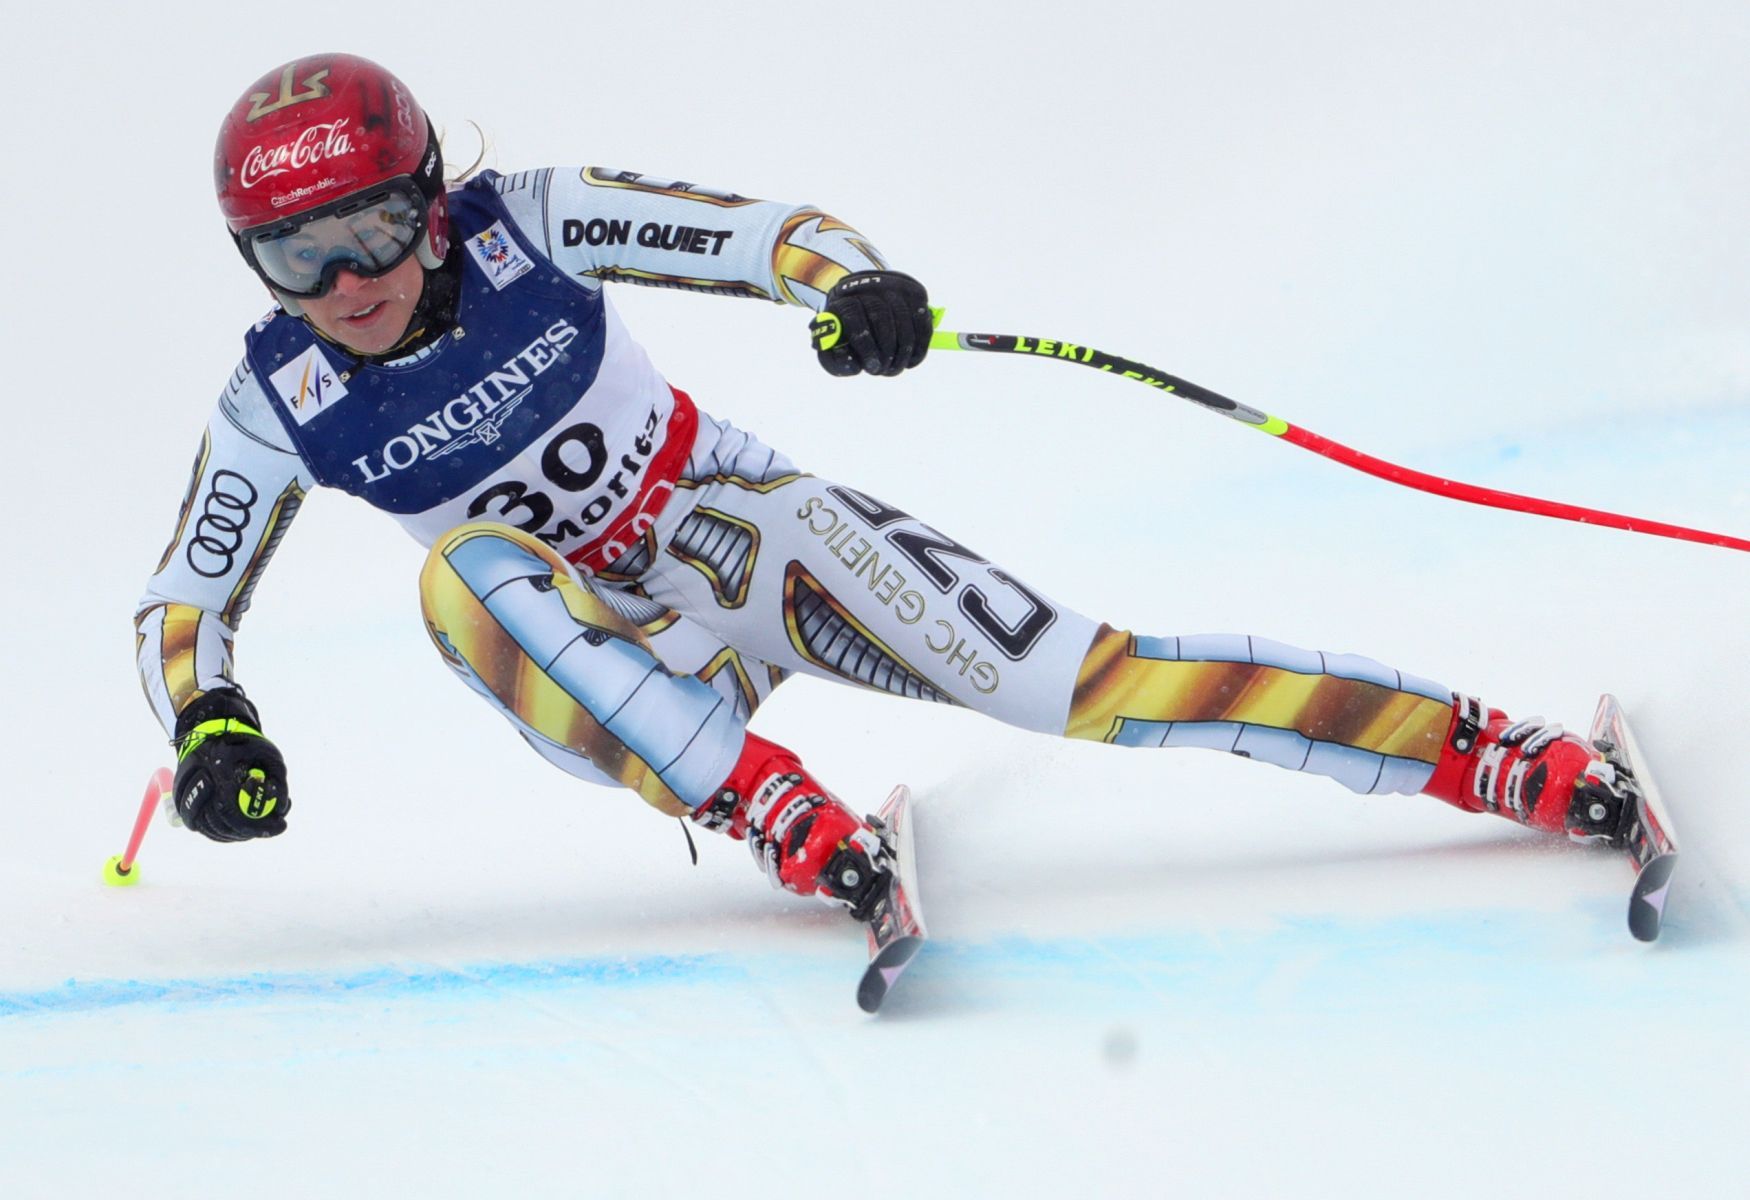 Ester Ledecká na MS ve sjezdovém lyžování 2017